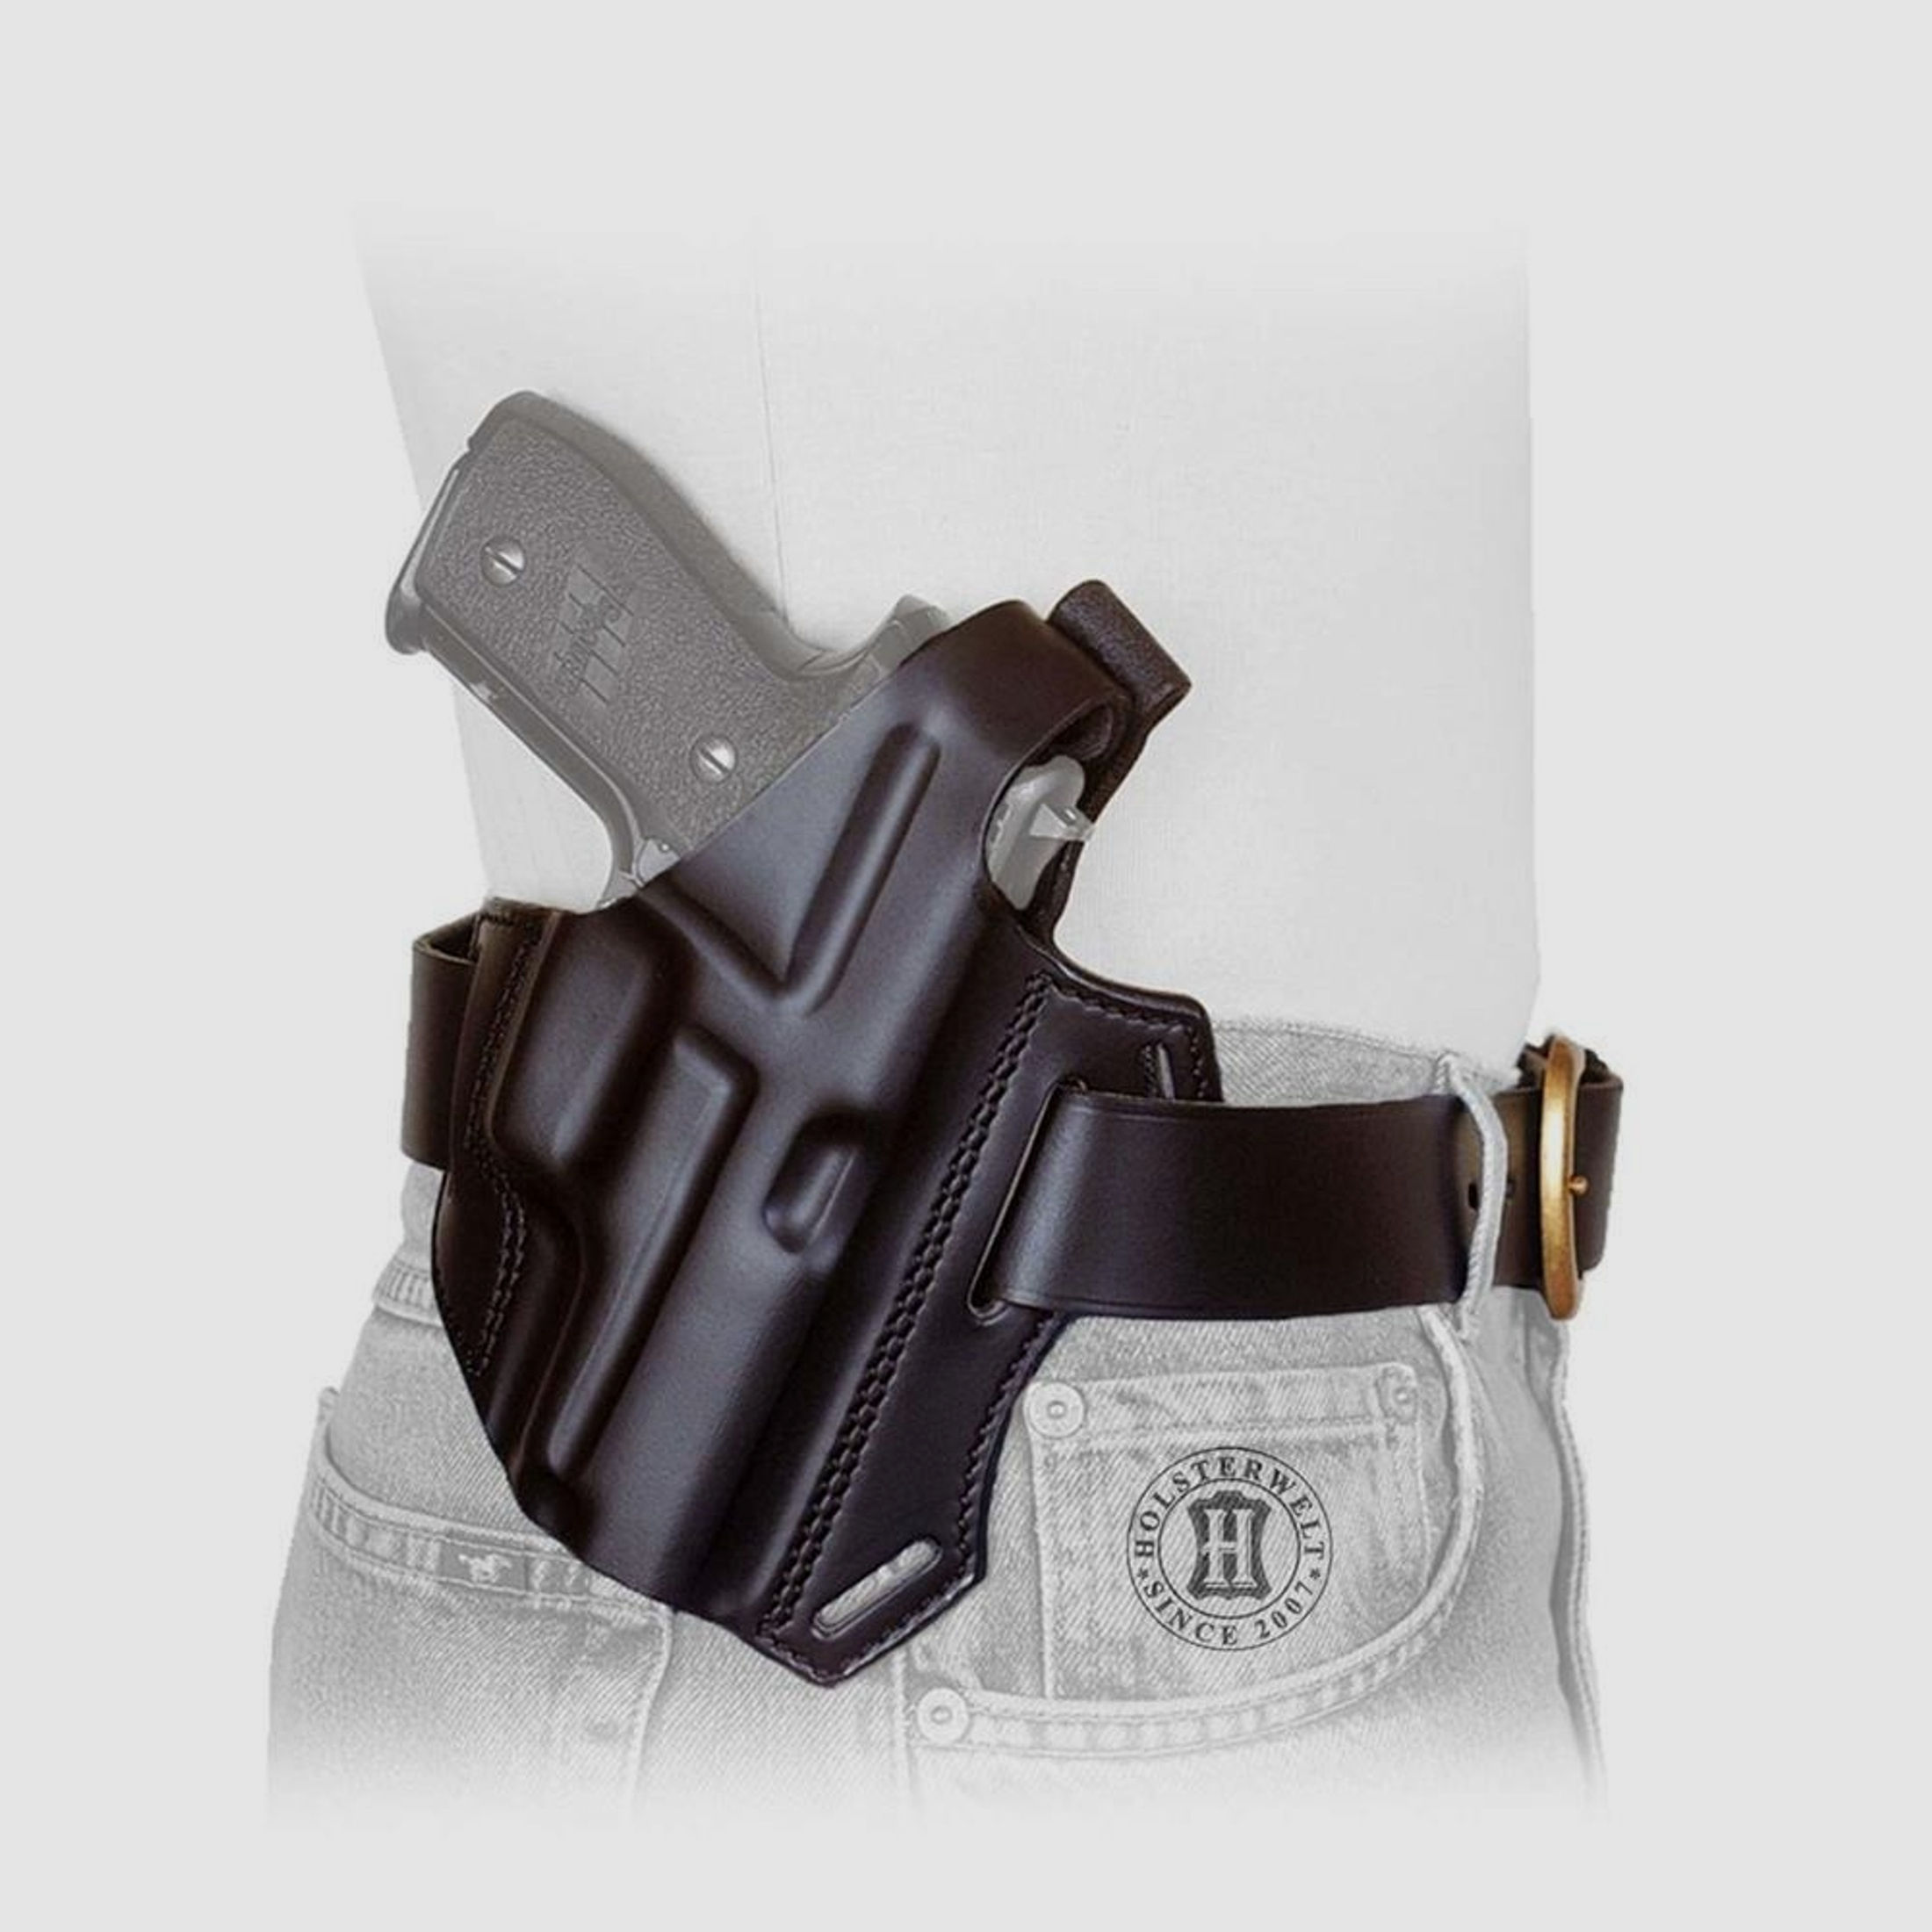 Gürtelholster / Schulterholster MULTI VARIO Glock 20/21/29/30, Zoraki 917-Schwarz-Linkshänder